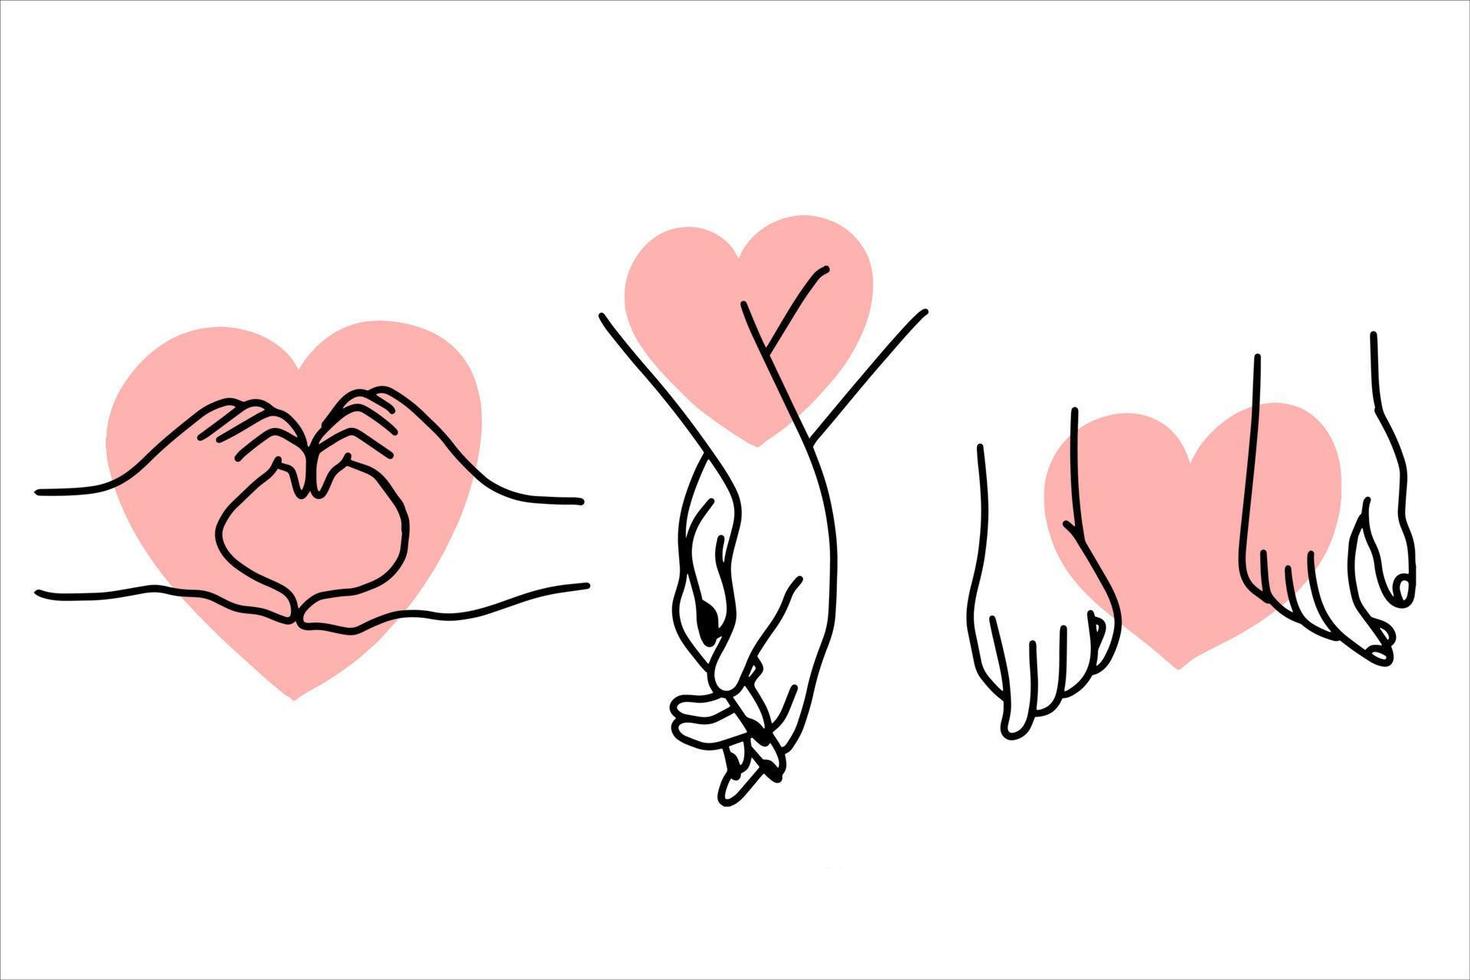 vrouwen meisje hand liefde gebaar met haard vlakke lijn kunst illustratie vector